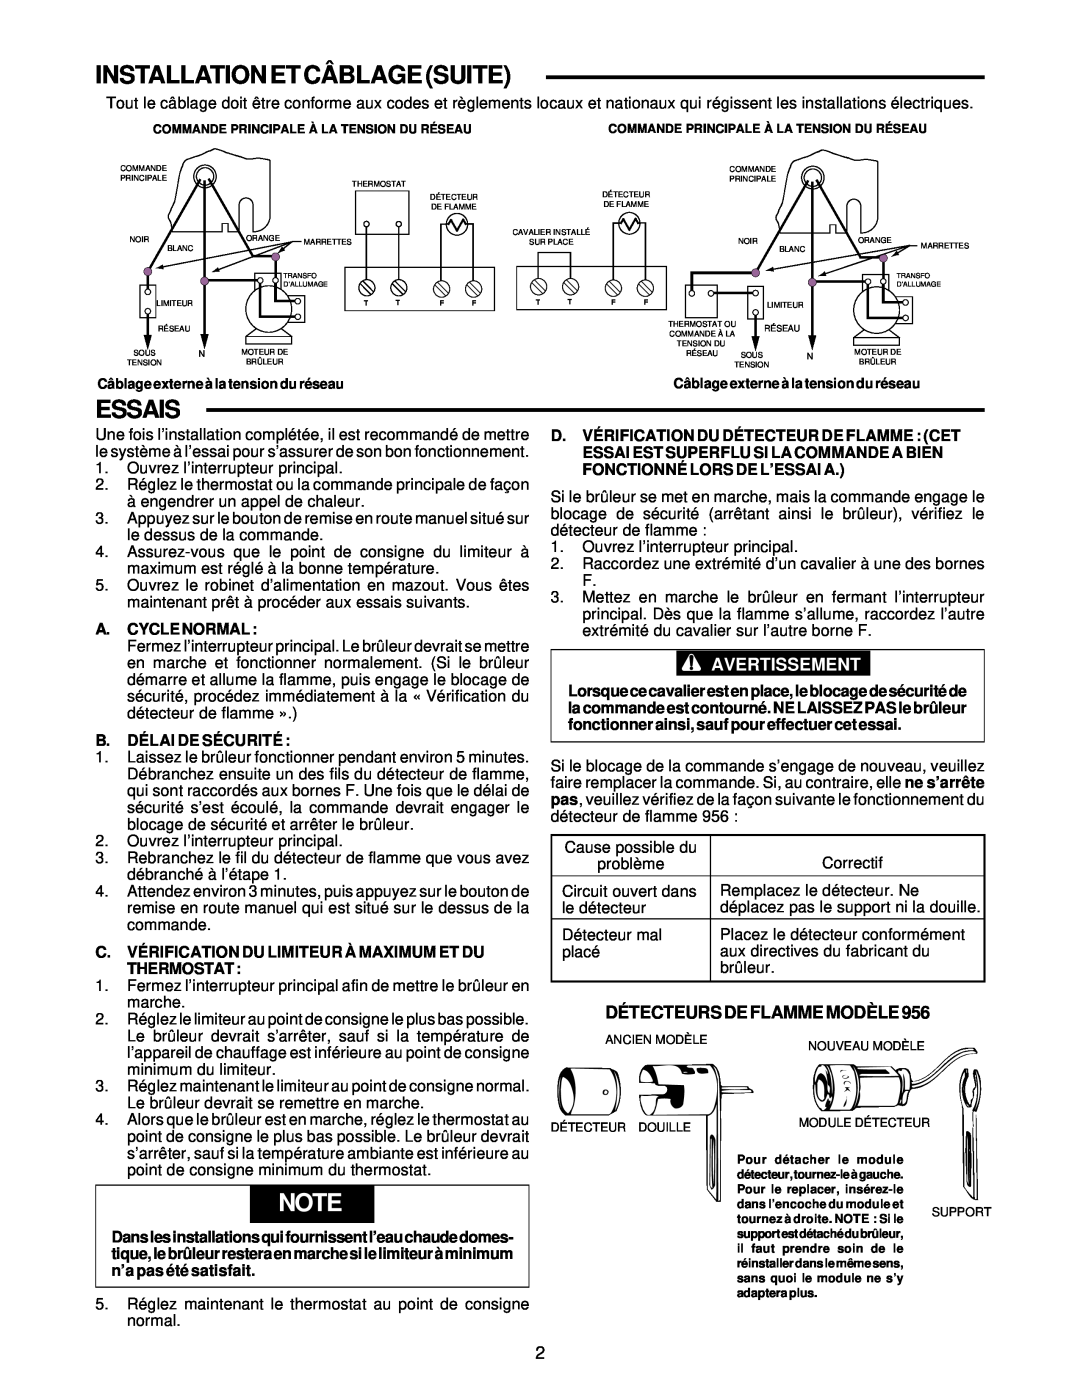 White Rodgers 668 Installation Et Câblage Suite, Essais, Avertissement, A.Cycle Normal, B.Délai De Sécurité, Thermostat 